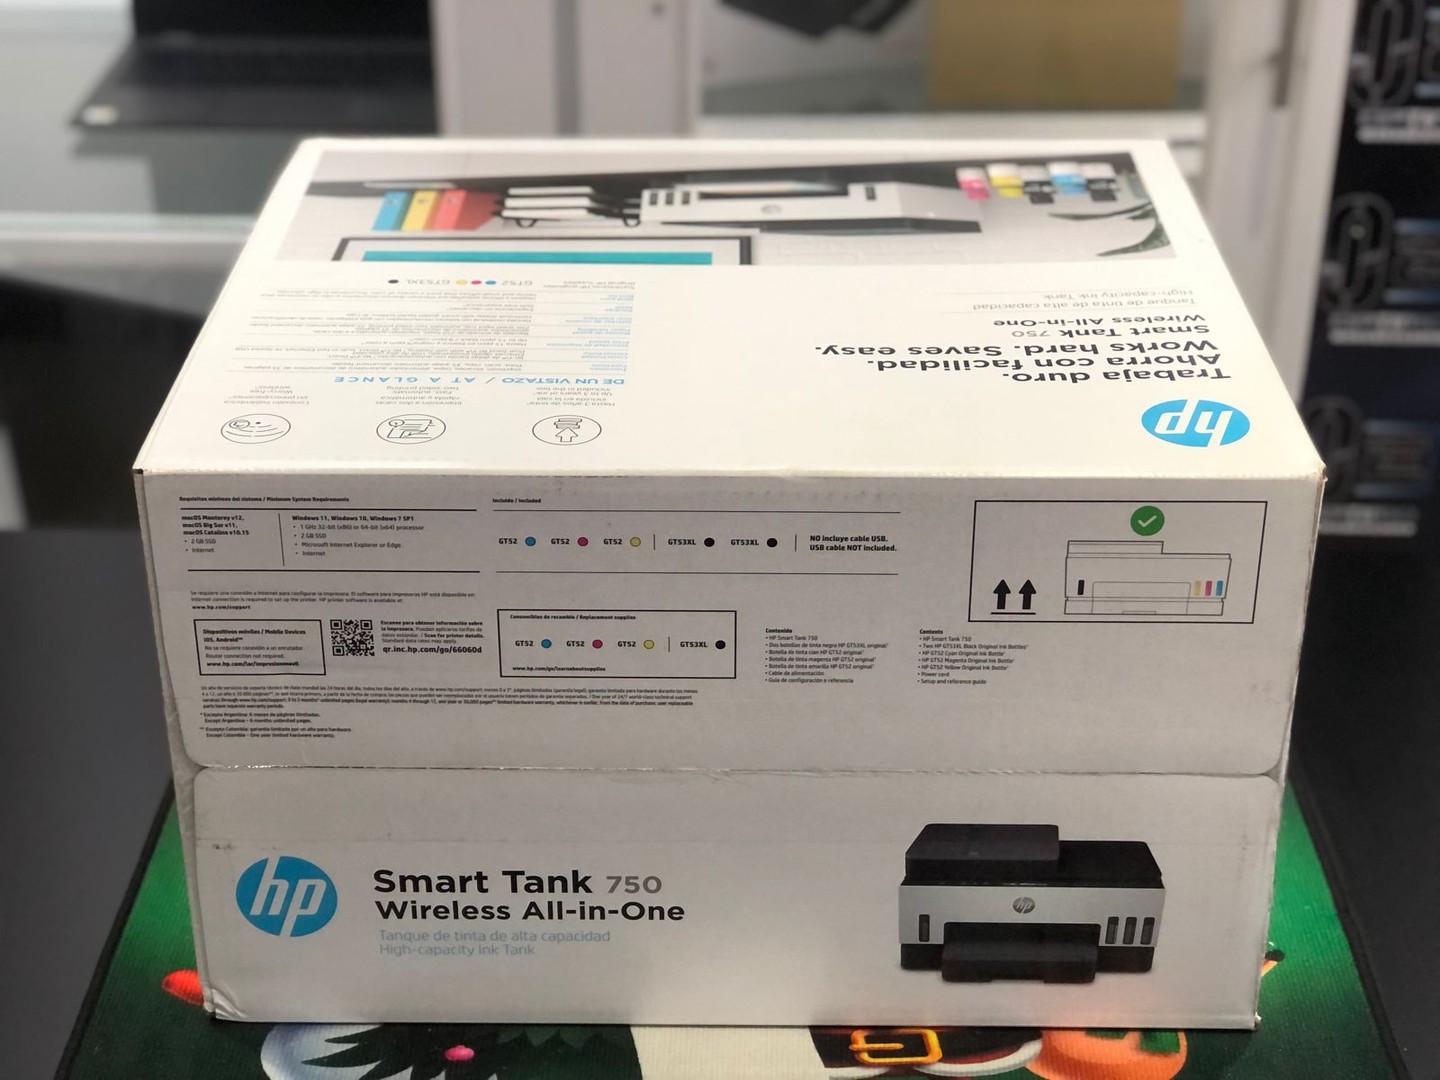 impresoras y scanners - Impresora HP 750 ADF Para Copia de Hoja Legal Nueva y Selalda Wifi, Multifuncion 5